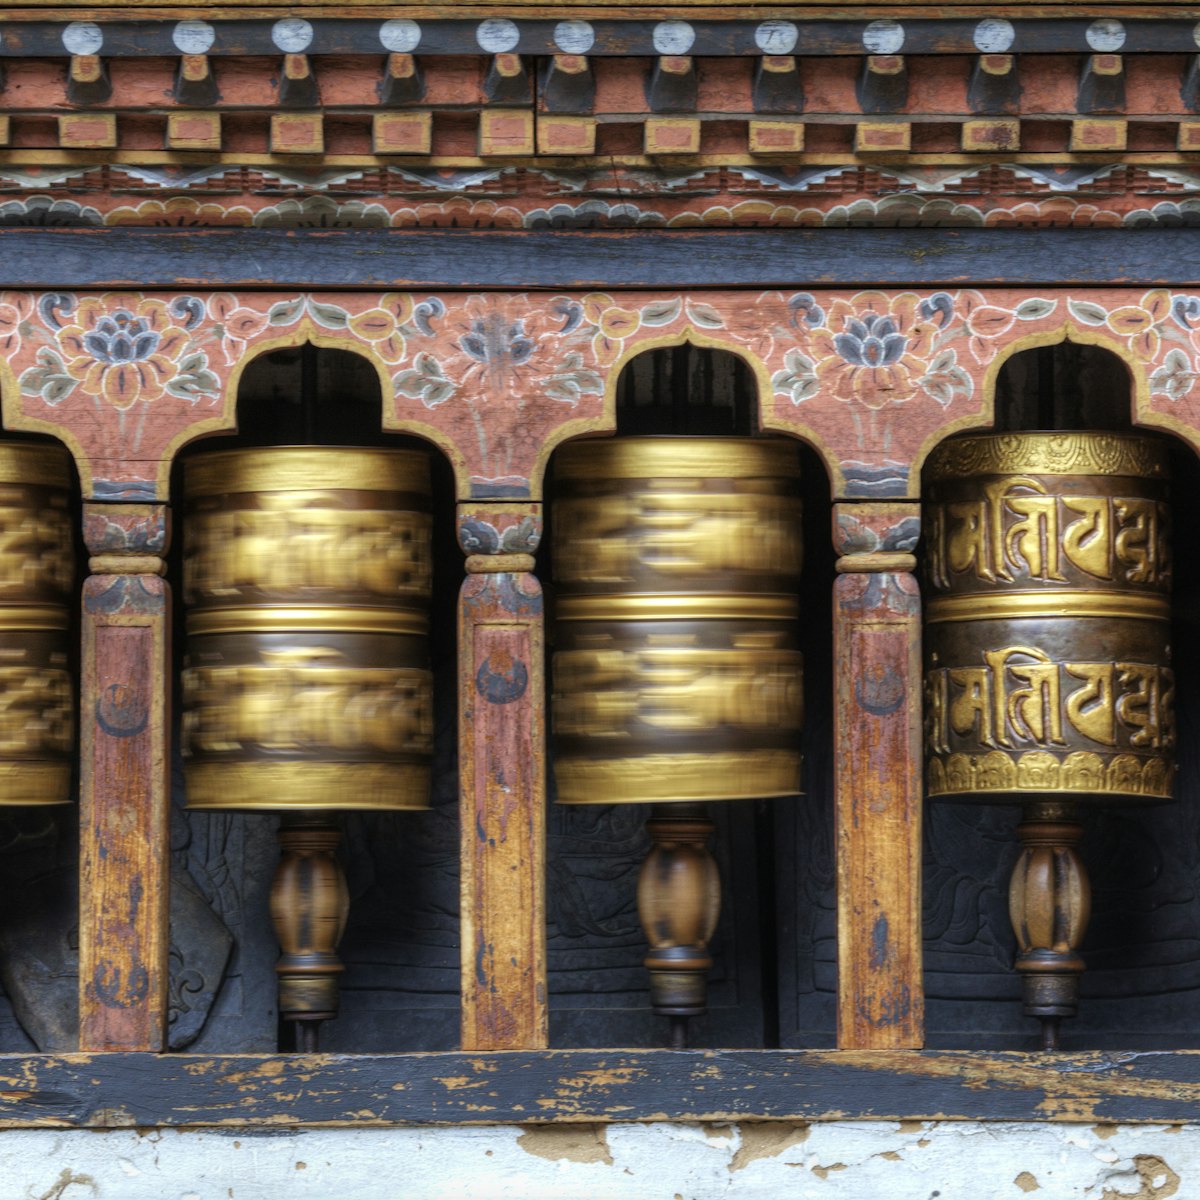 Changangkha Lhakhang, Thimphu, Bhutan, Asia.